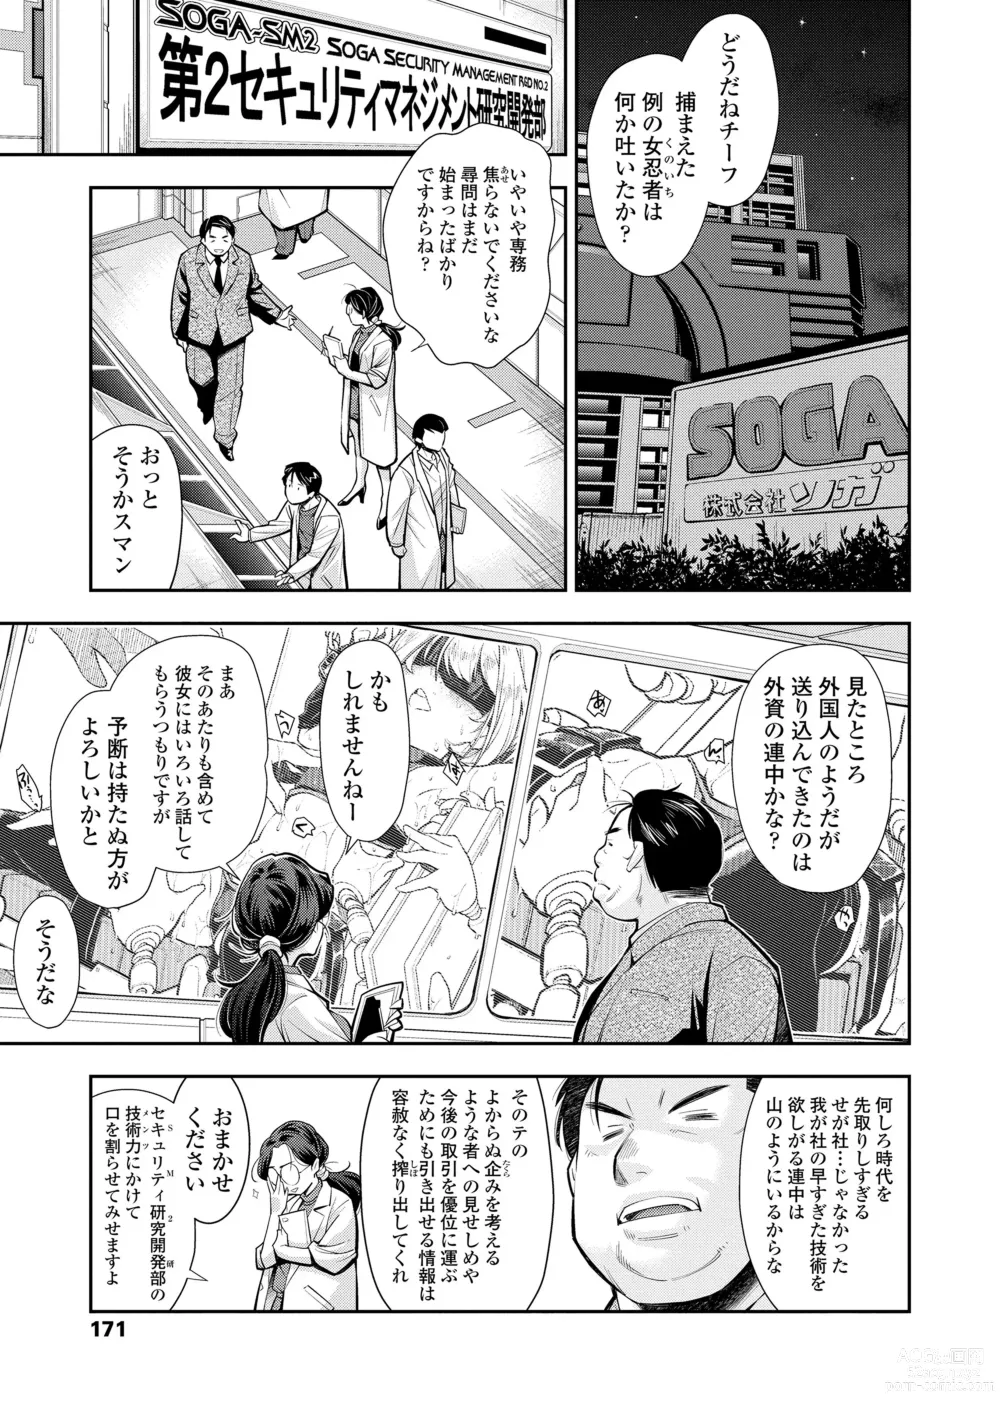 Page 173 of manga Onnanoko wa Sono Yubi no Ugoki ni Yowain desu